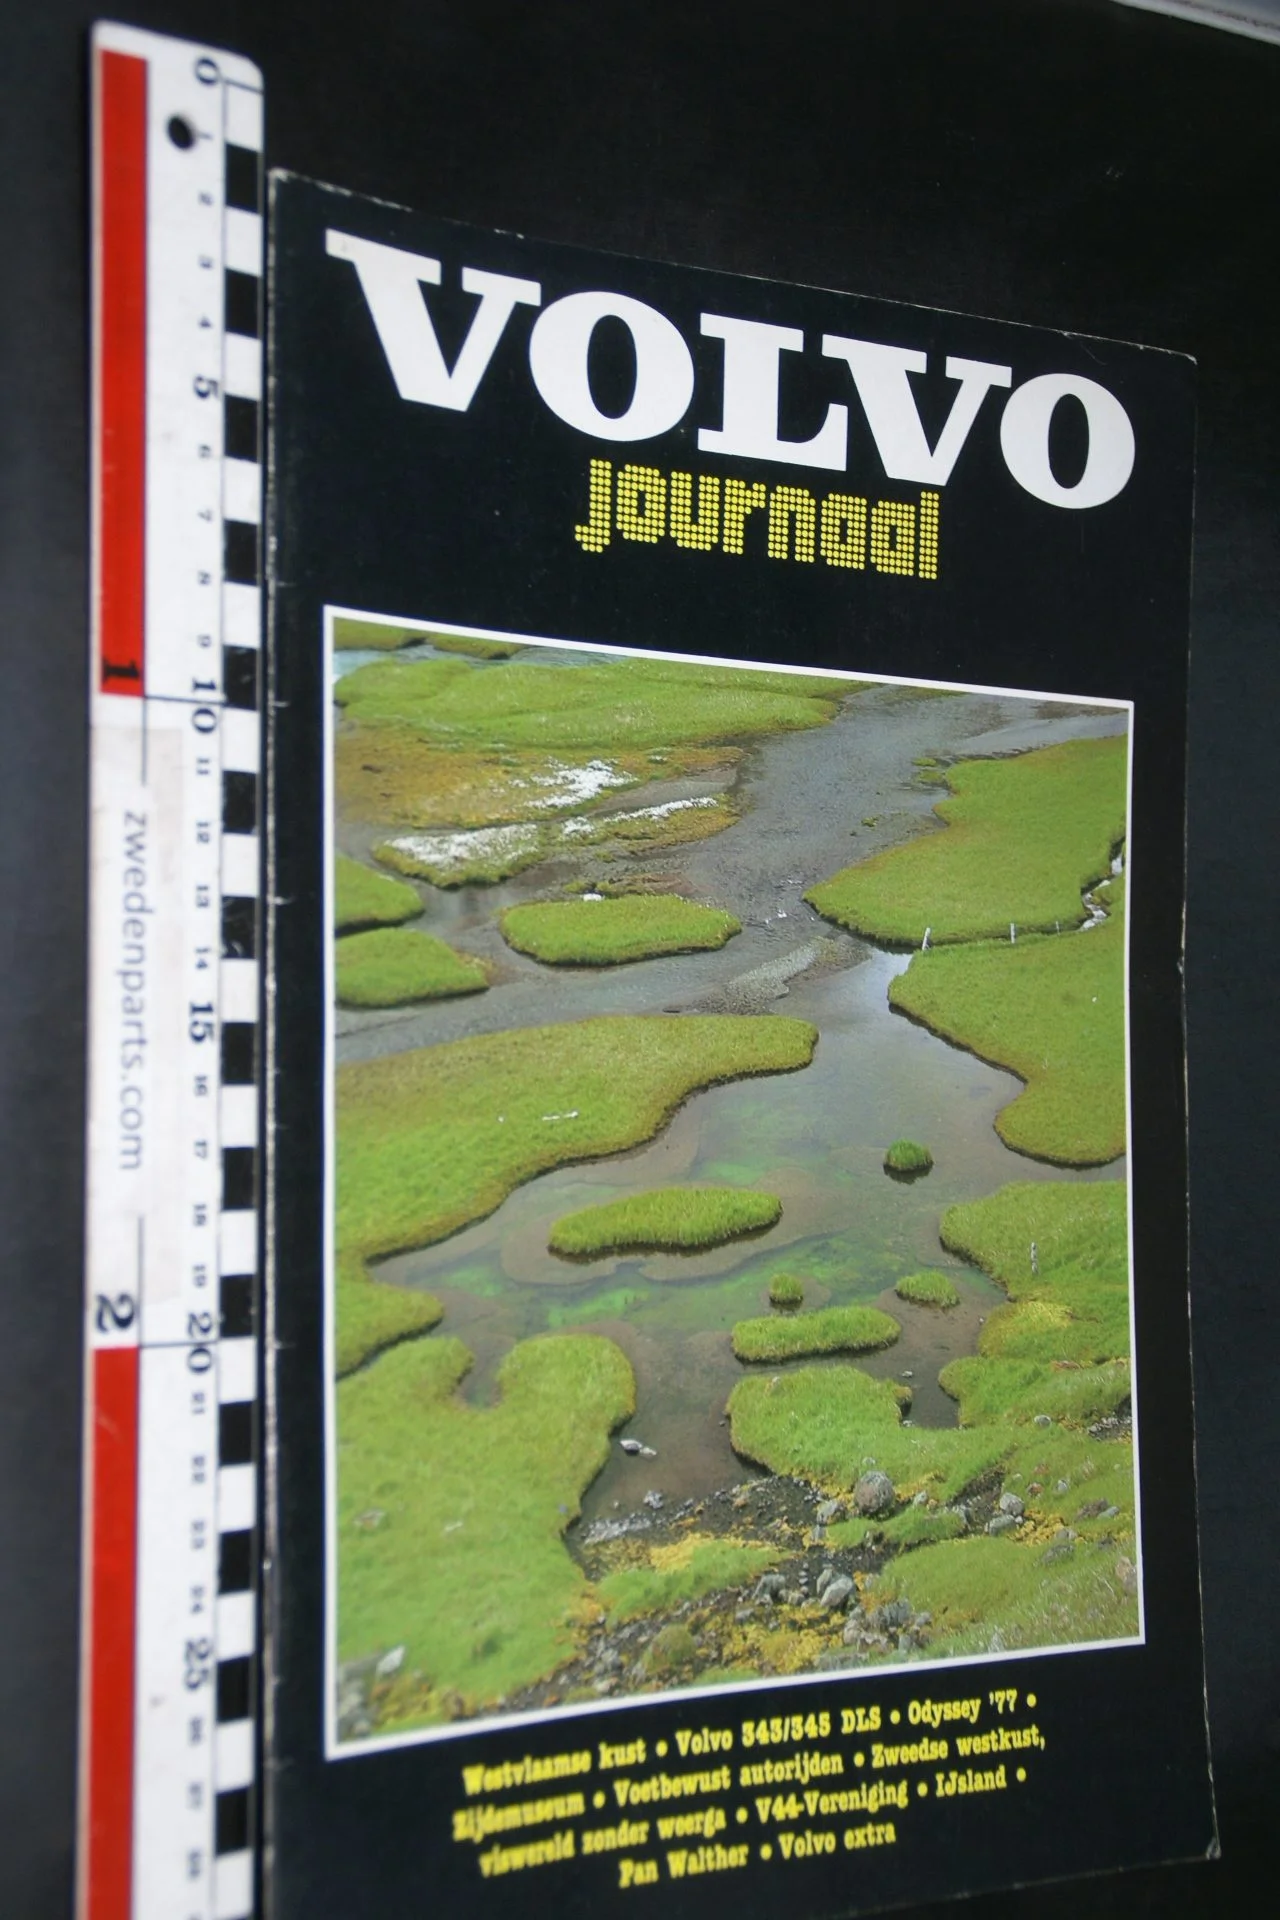 DSC03414 1981 tijdschrift Volvojournaal voorjaar 81 rotated